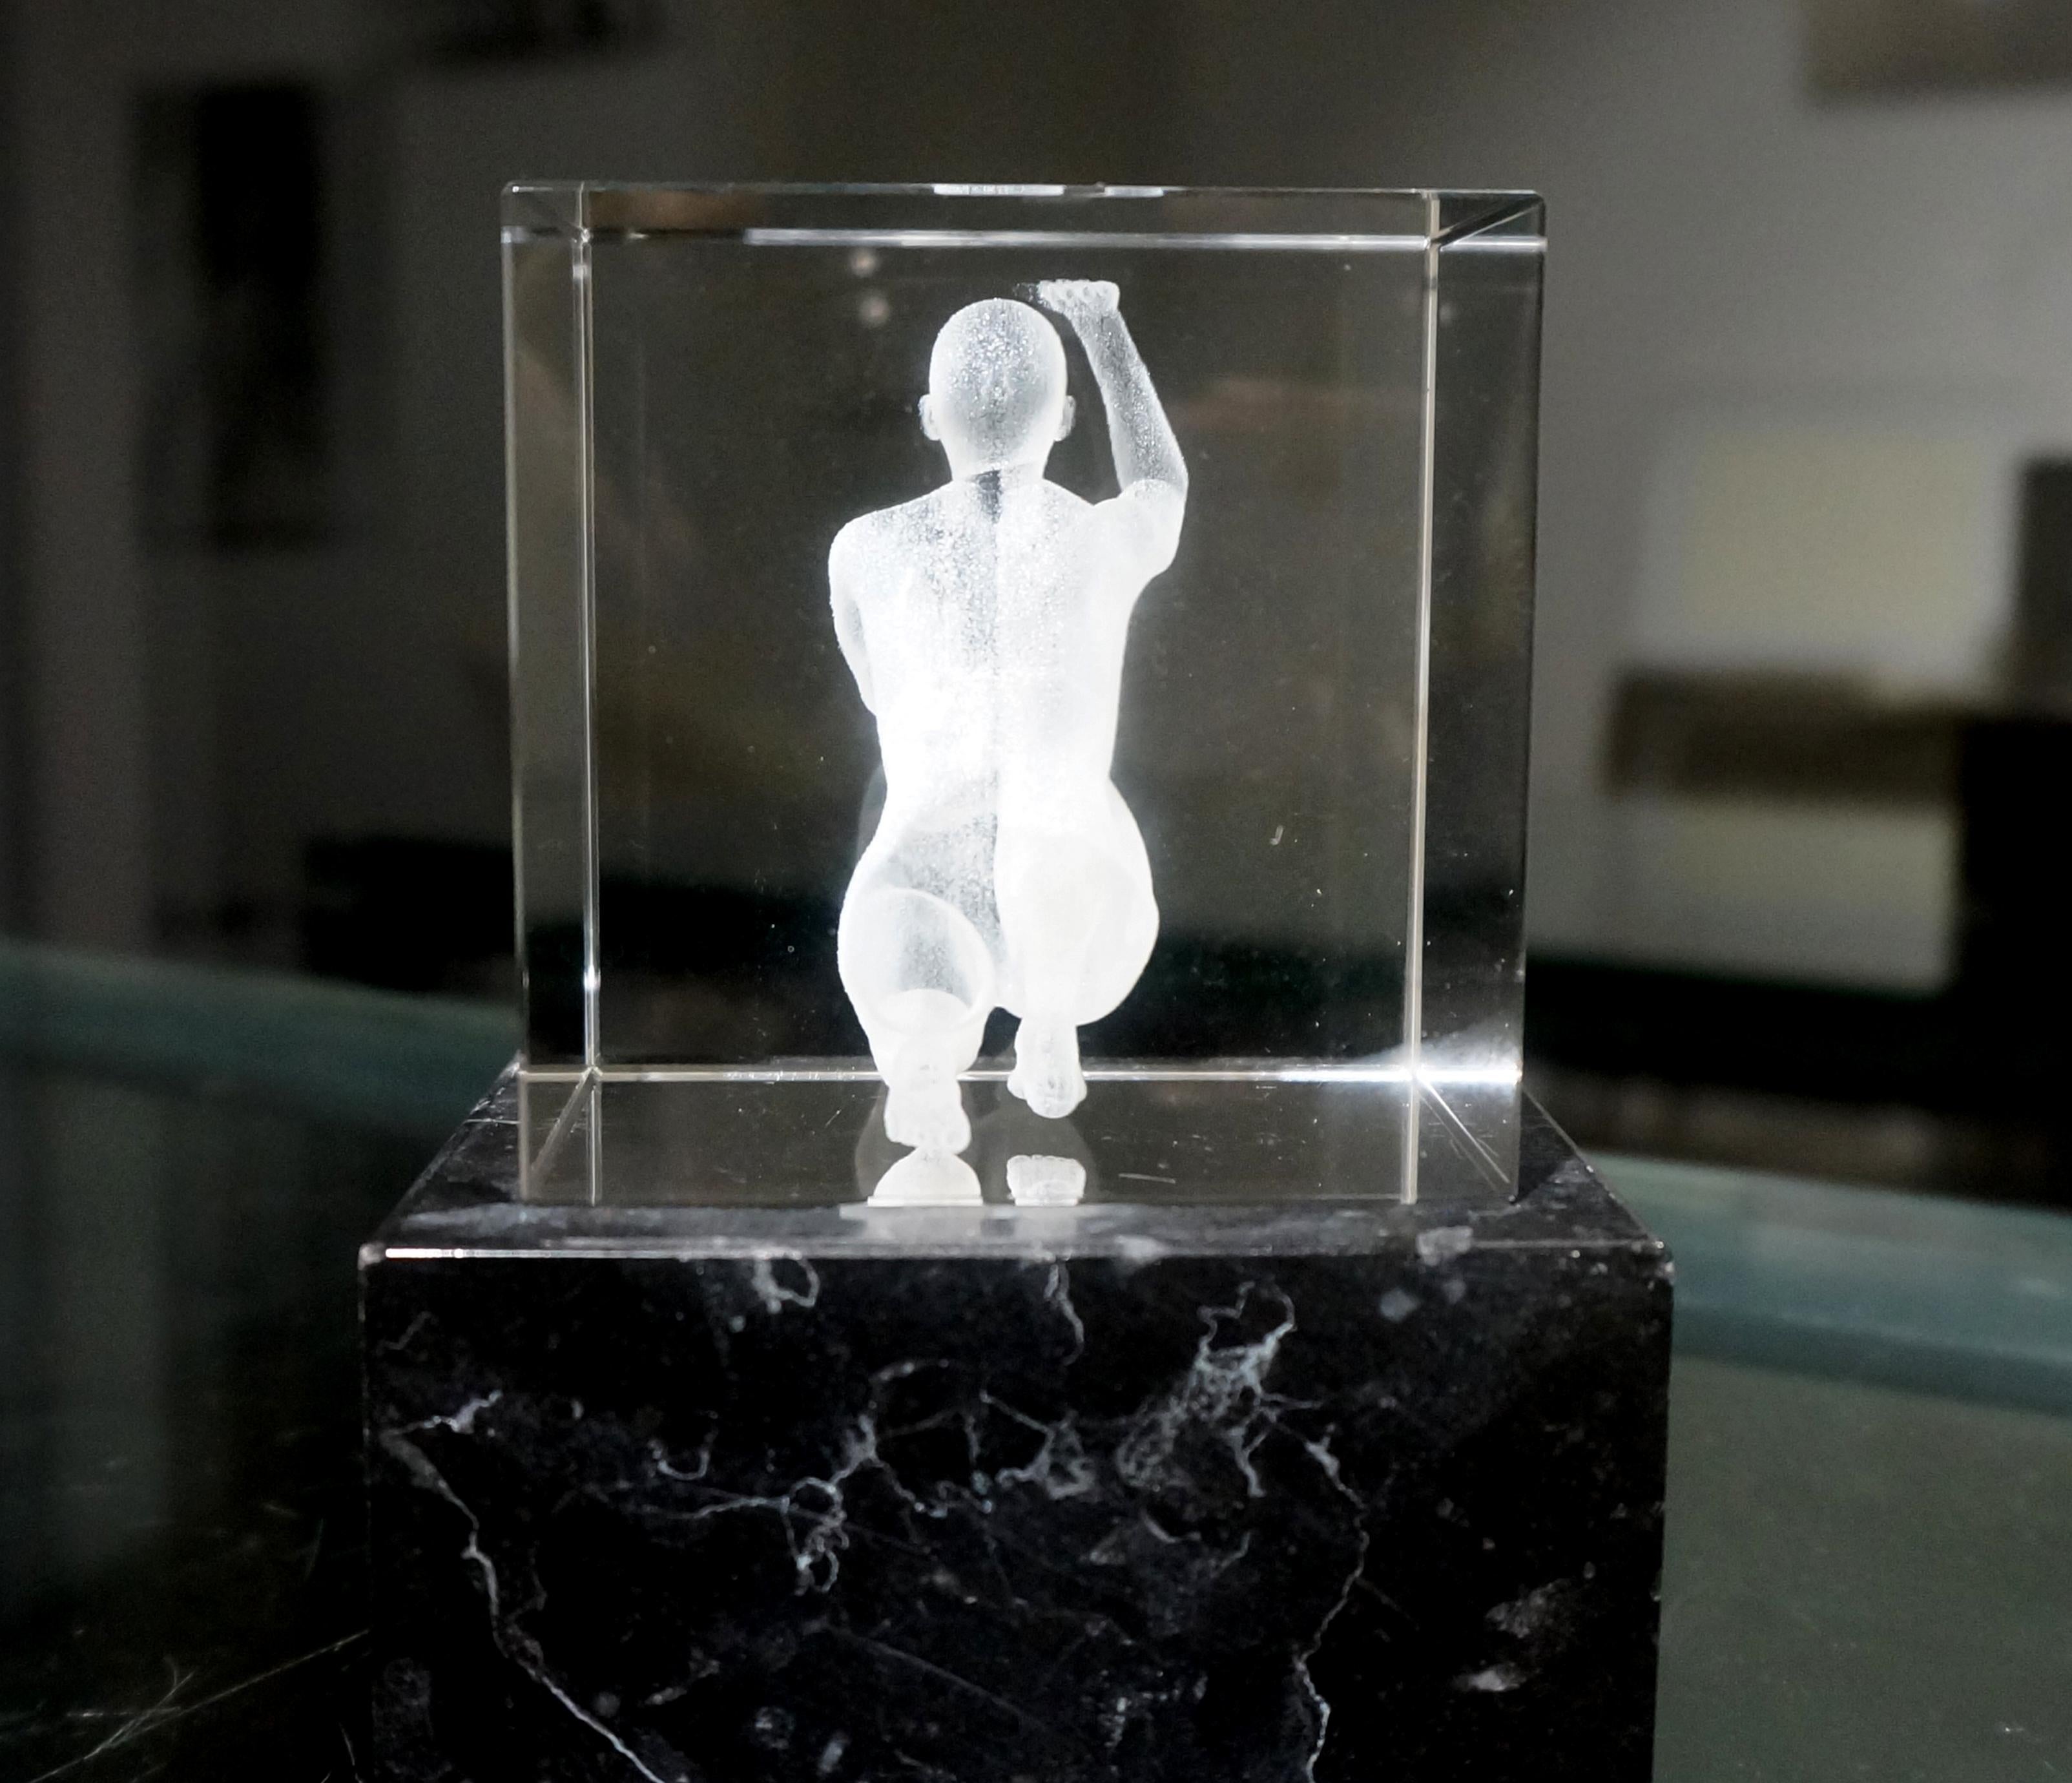 Kristallglas, massiver Marmor, Lasergravur
8x8 cm

Über den Künstler
Als Künstlerin, die in Istanbul lebt und mit den Bereichen Geschichtsschreibung, Politik und Soziologie zusammenarbeitet, sind die Werke, die ich in den letzten zwanzig Jahren